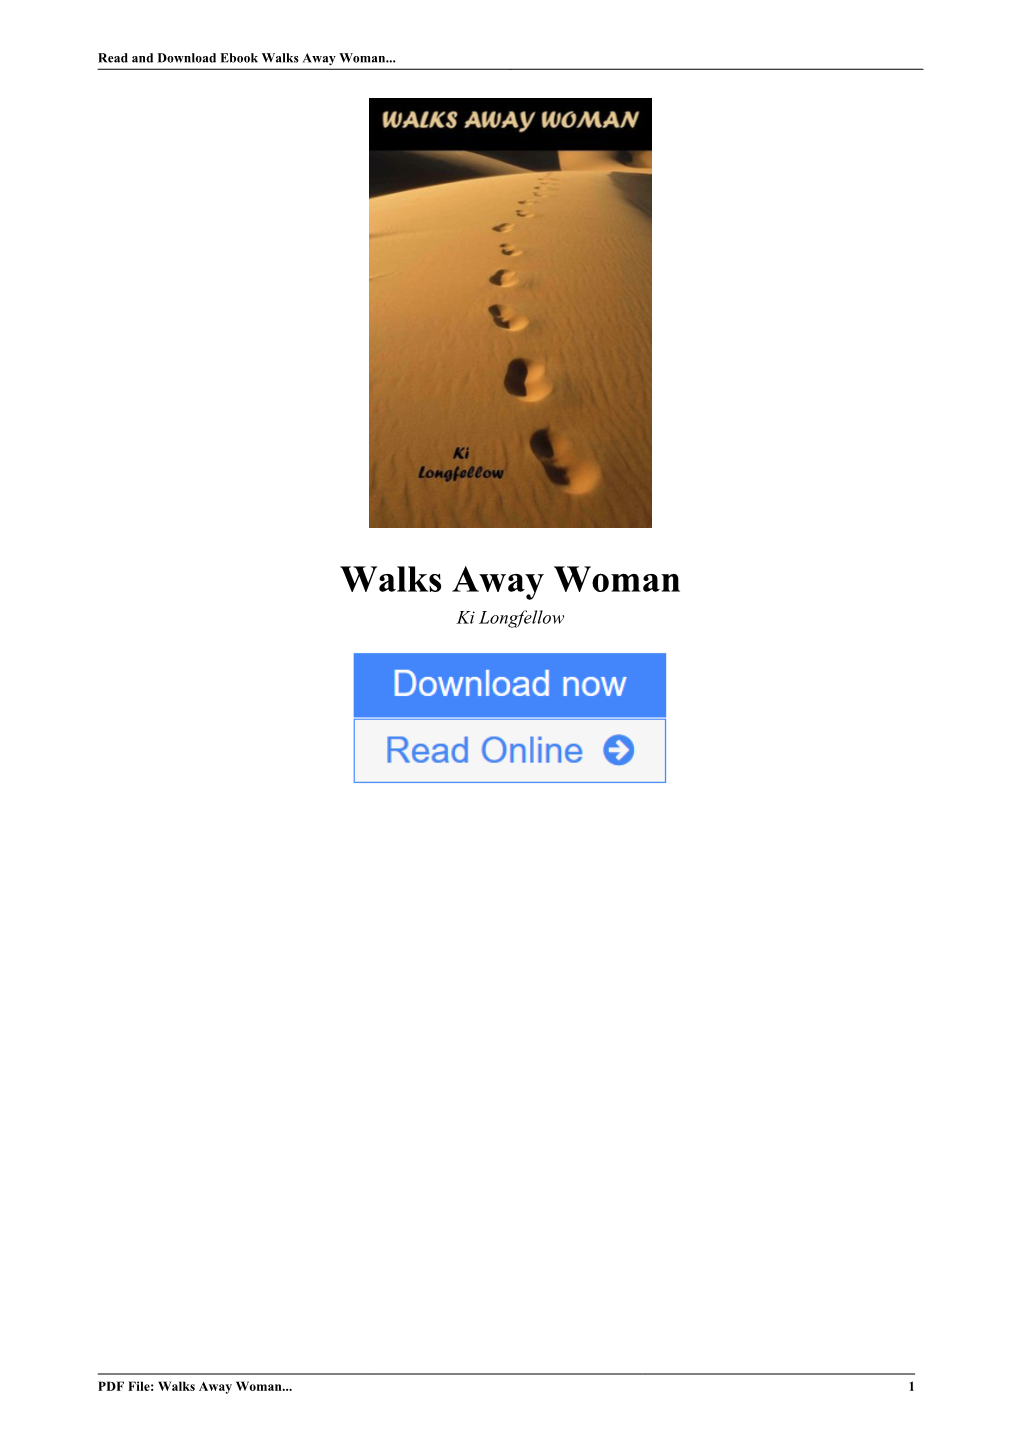 Walks Away Woman by Ki Longfellow